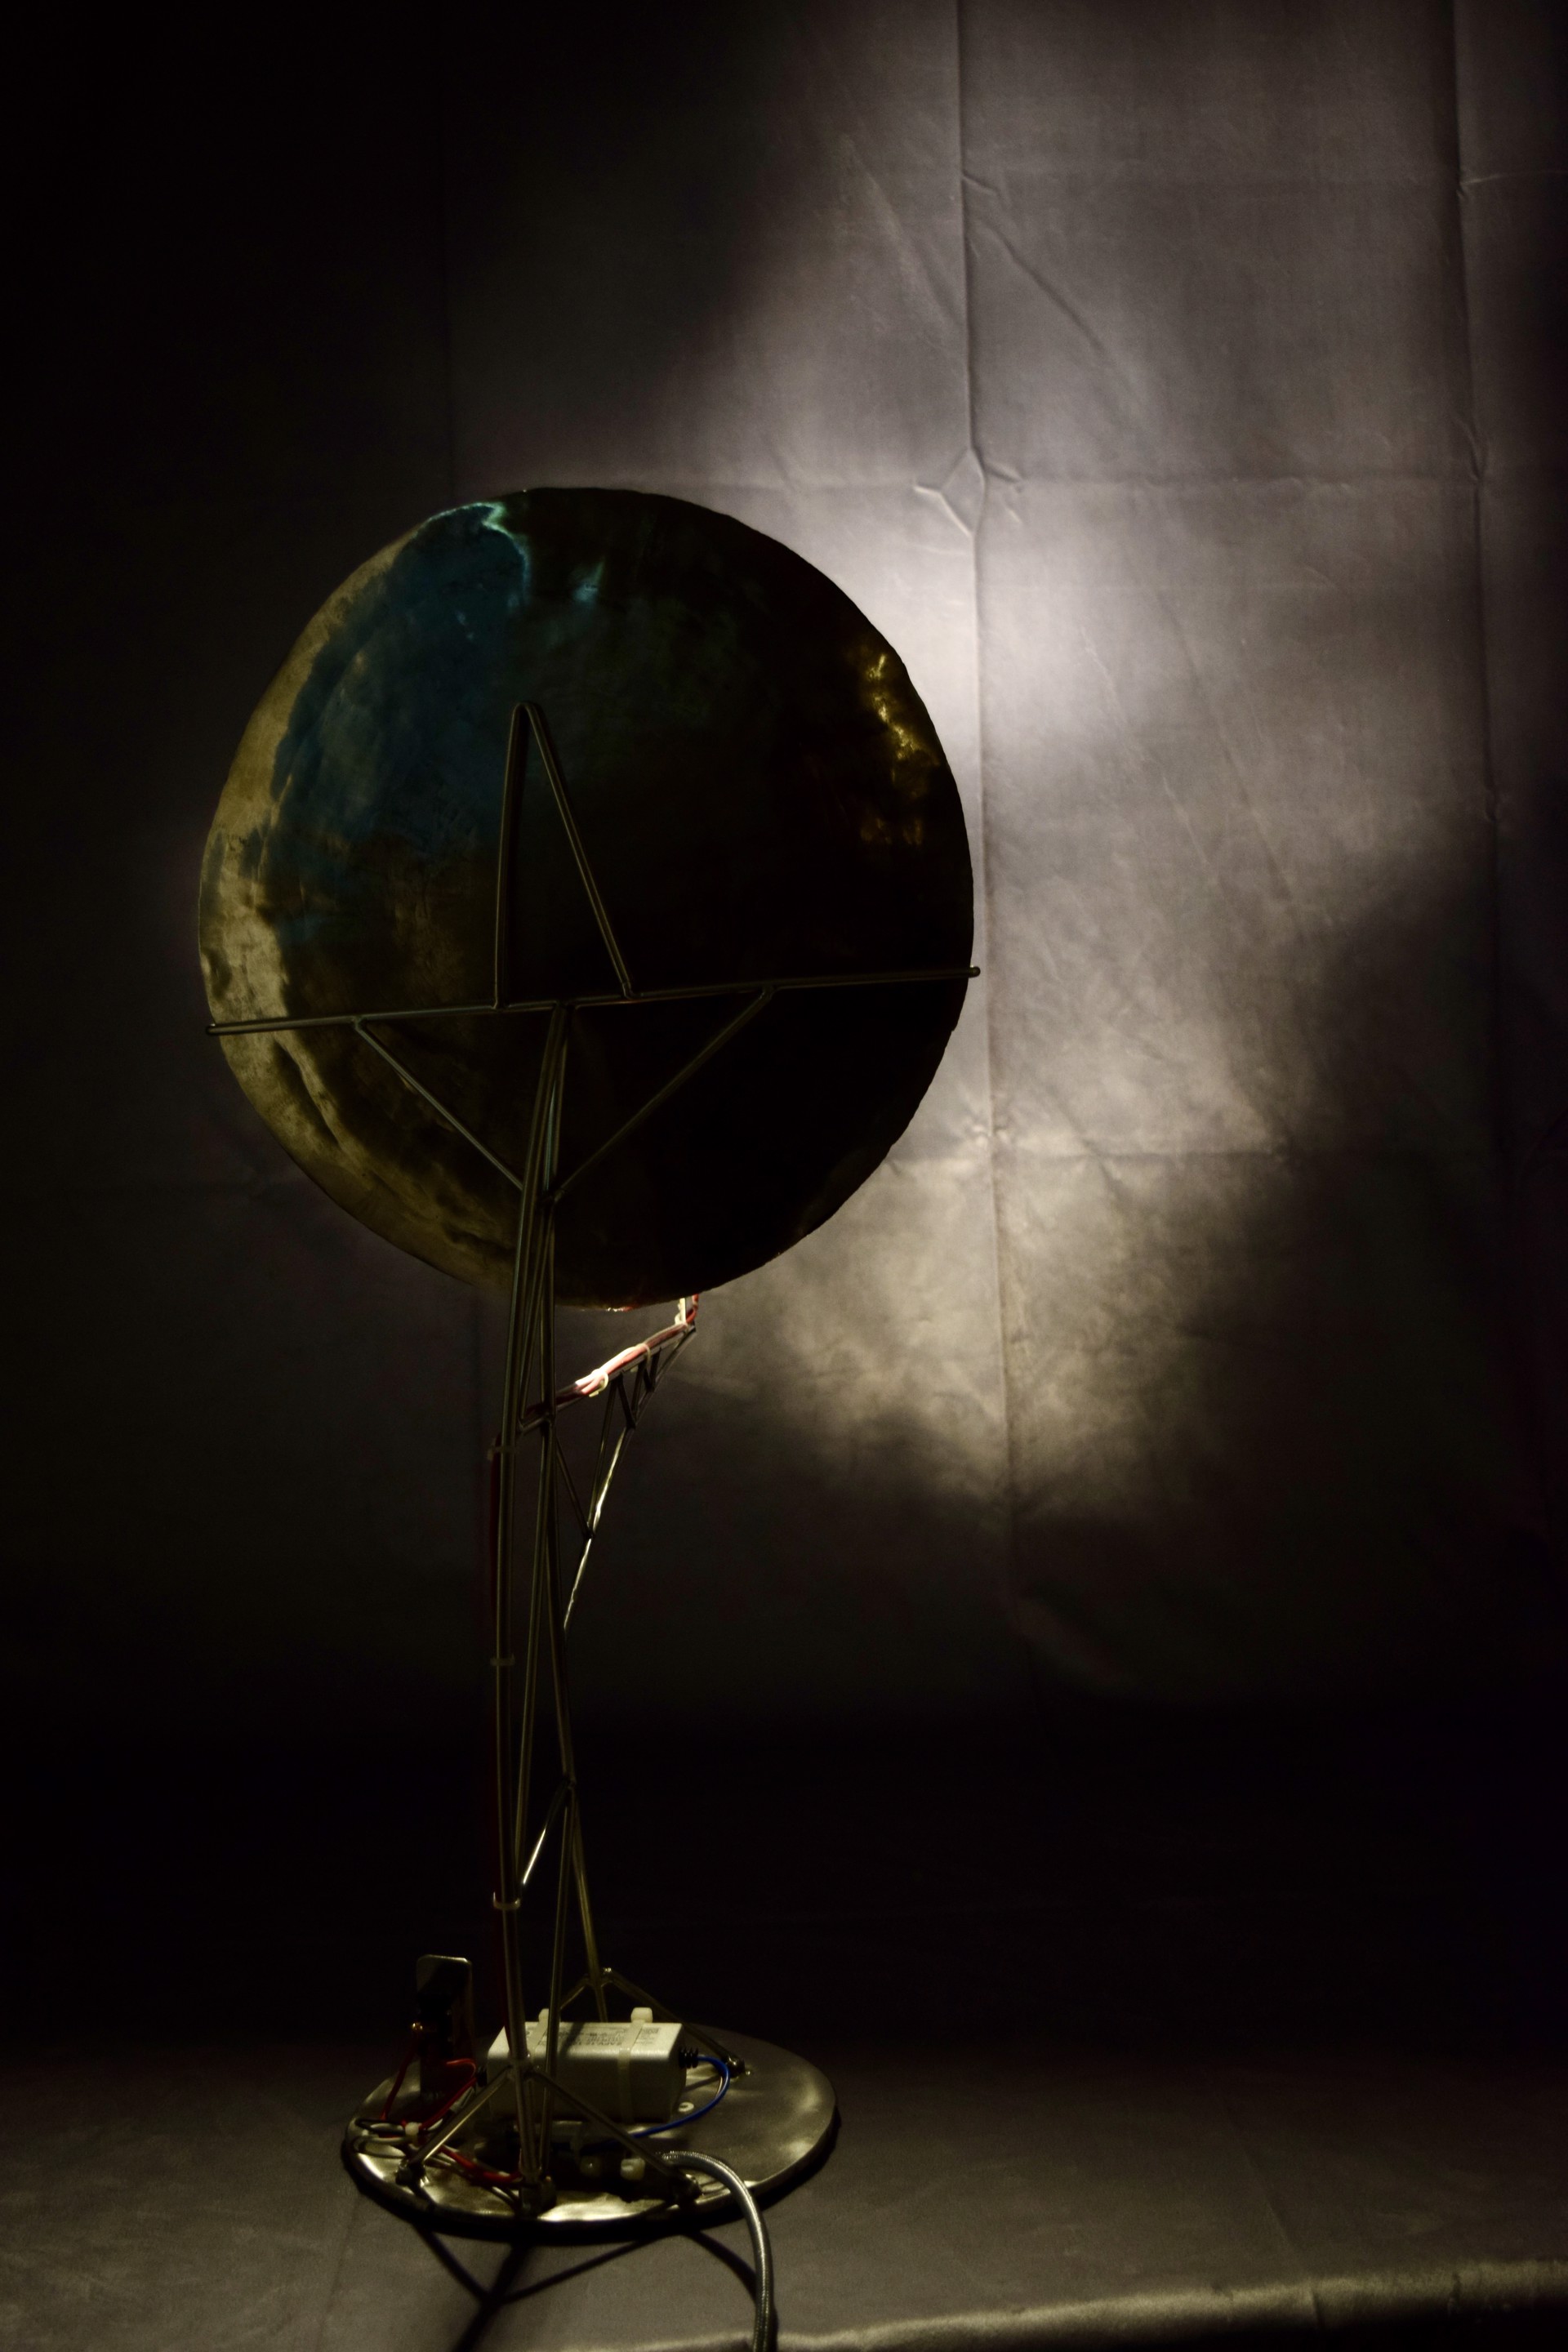 Satellite Dish by Tim Glover